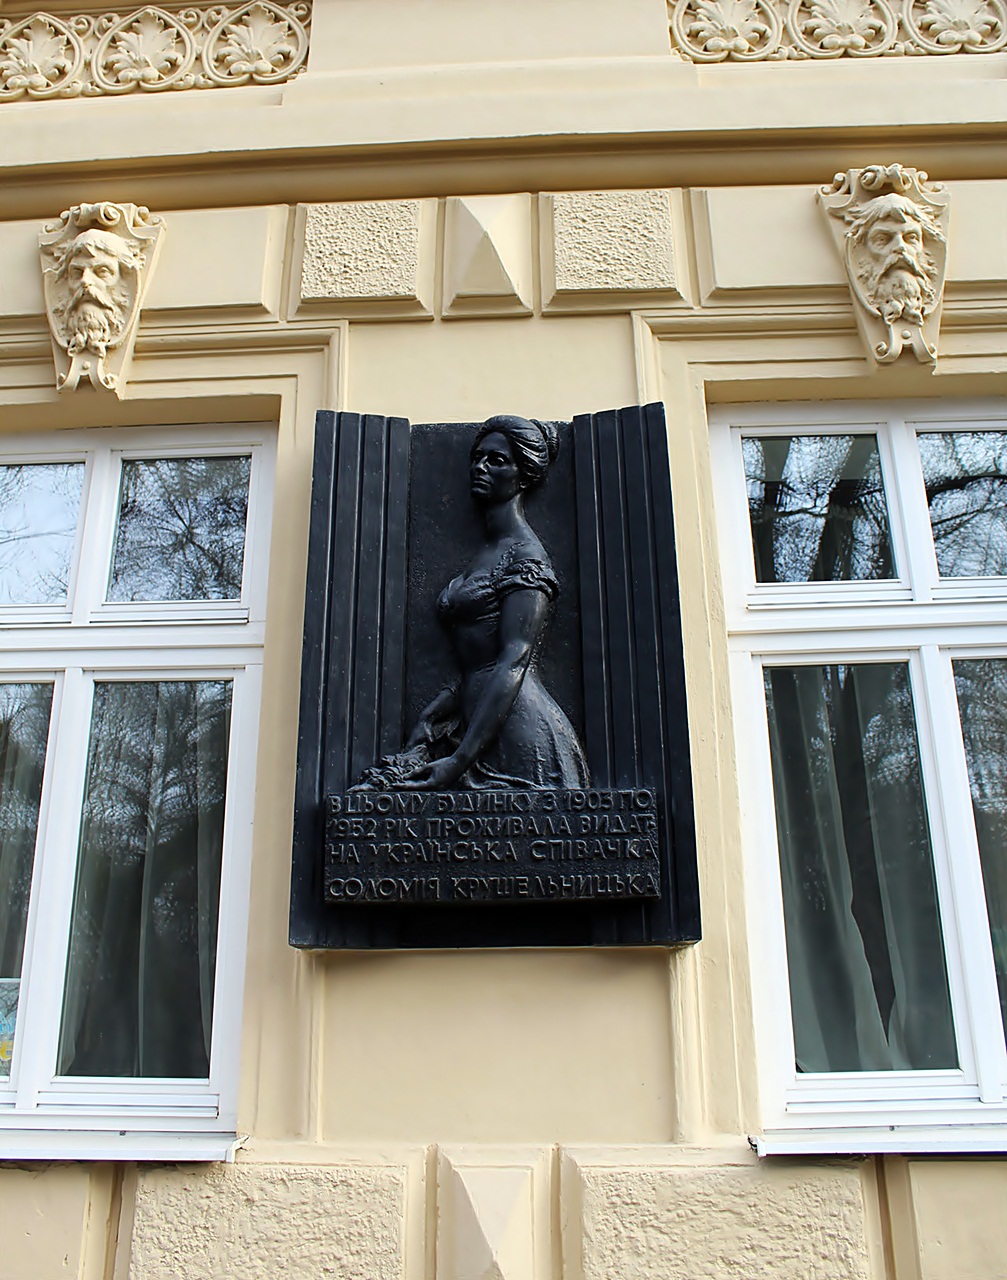 1978 року на фасаді було розміщено меморіальну дошку, присвячену Крушельницькій, авторства Еммануїла Миська